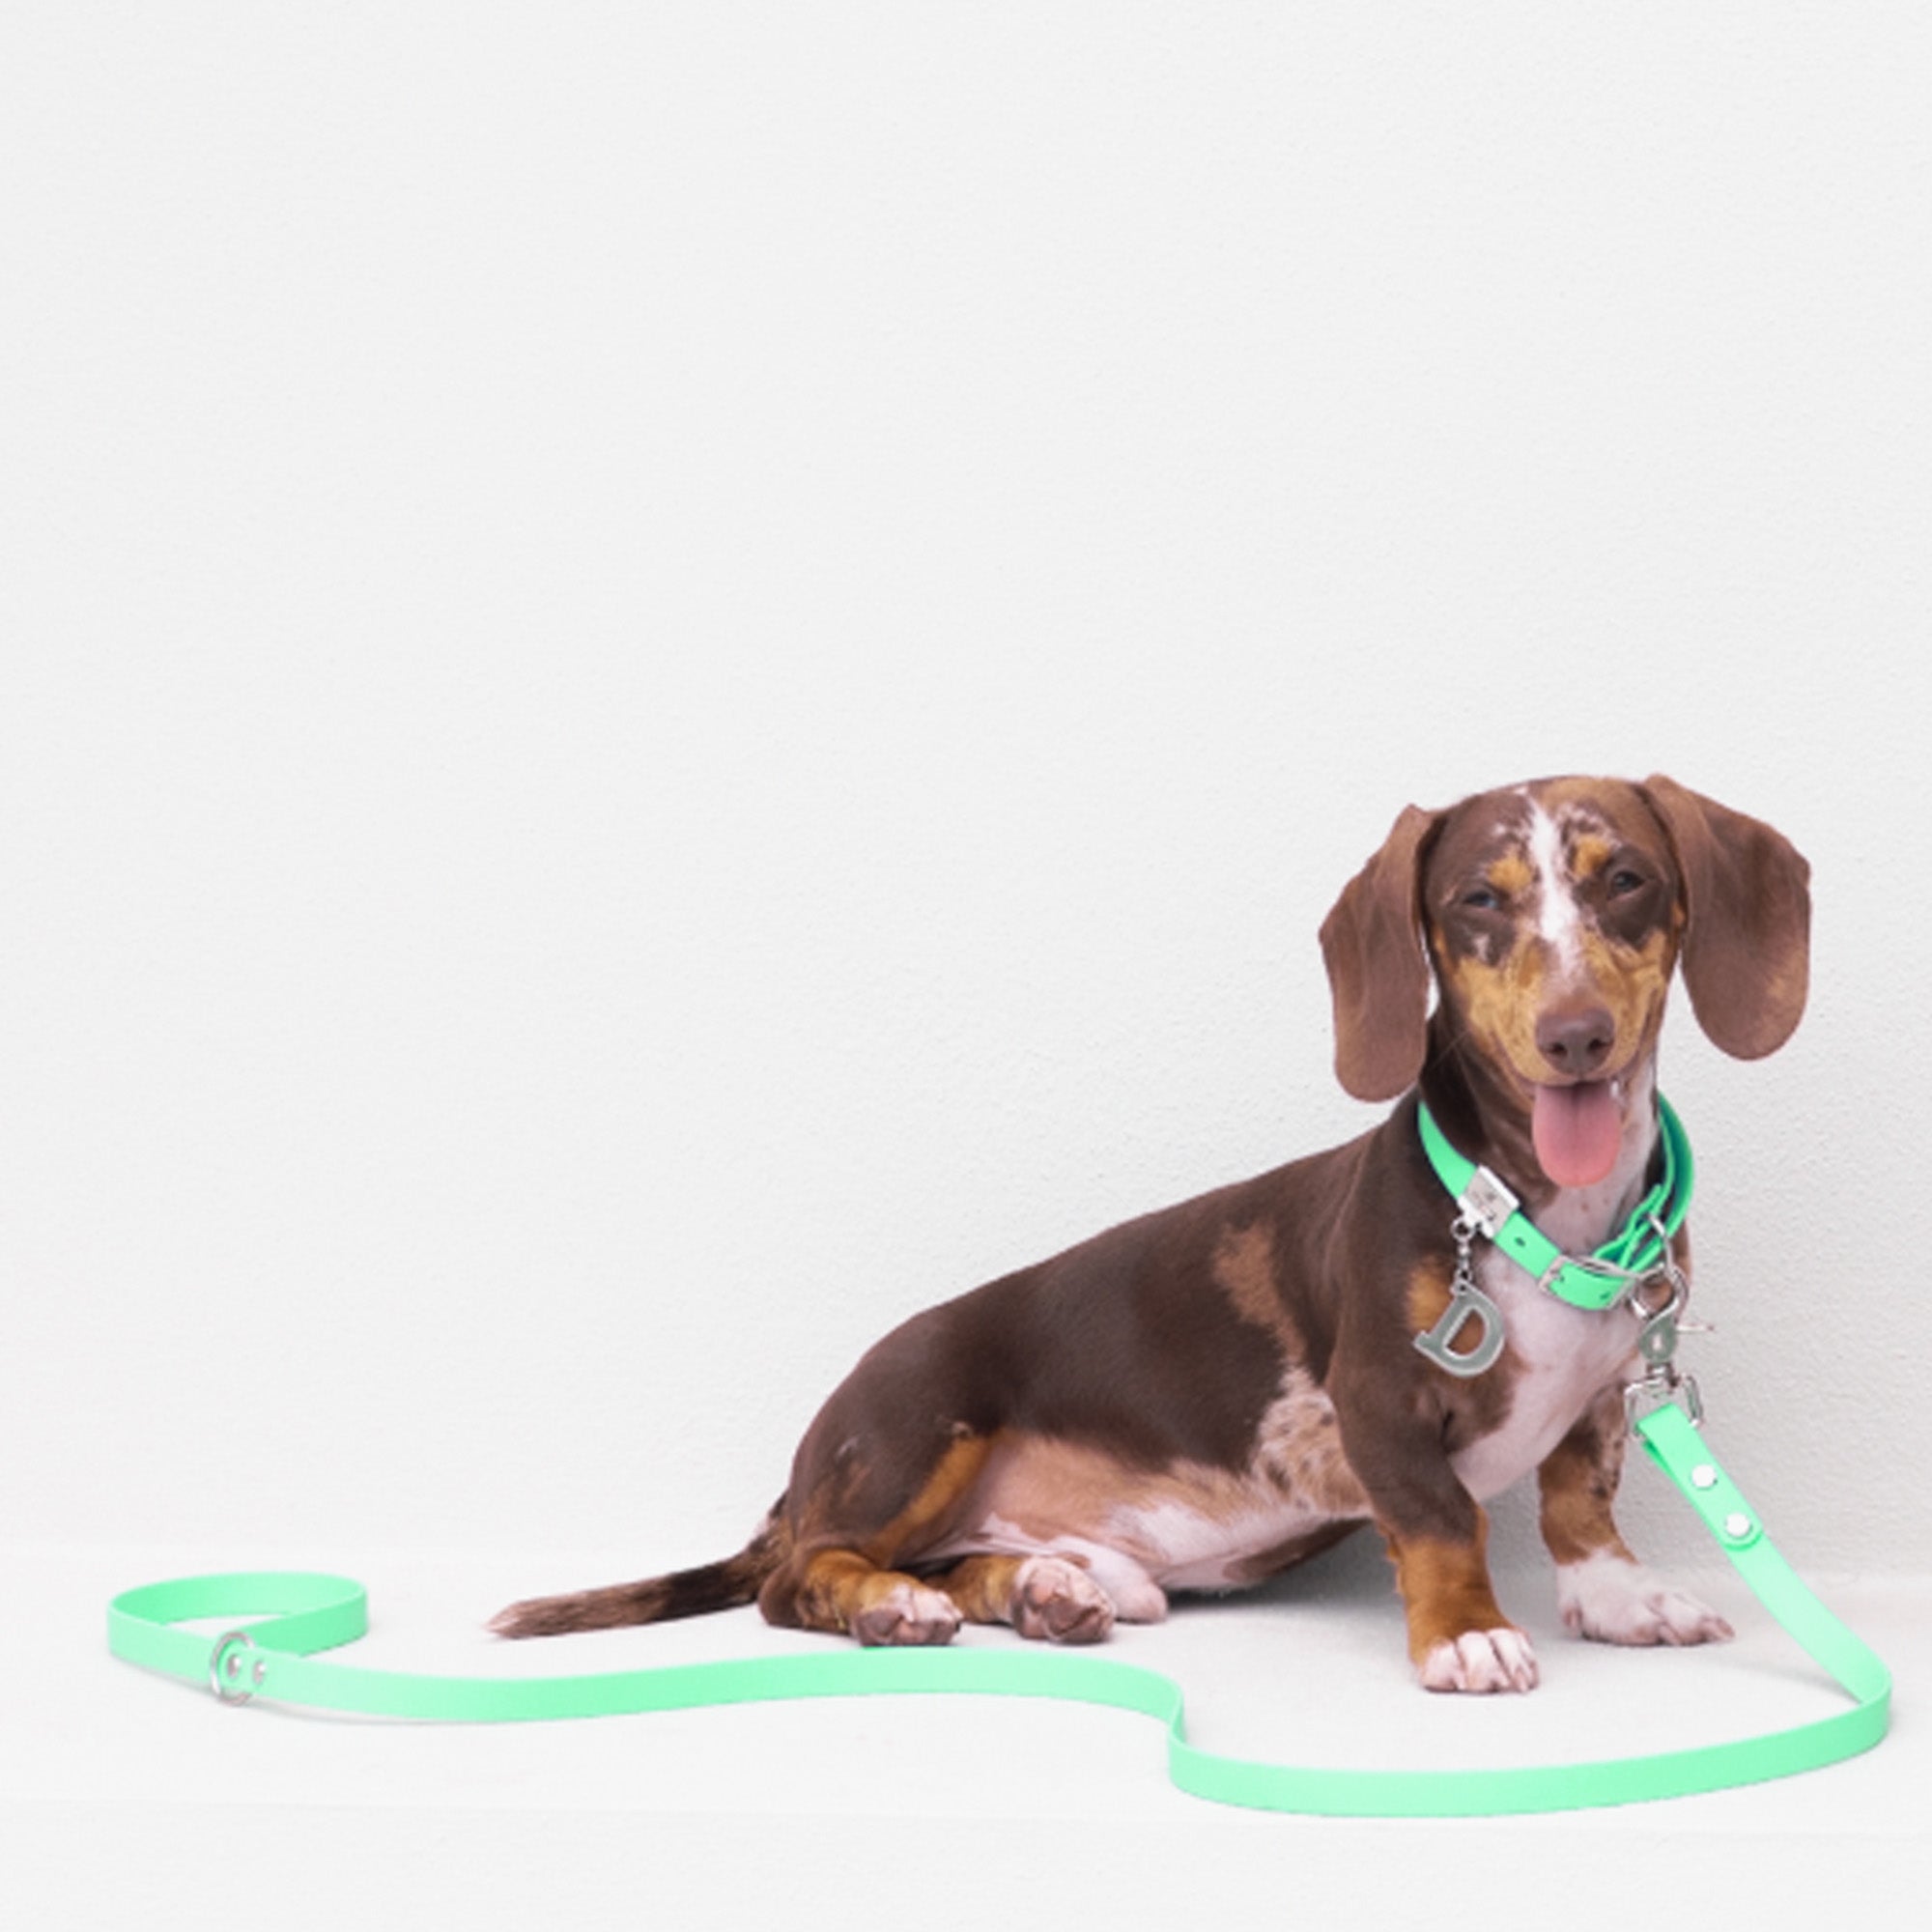 Waterproof Dog Lead in Mint Green